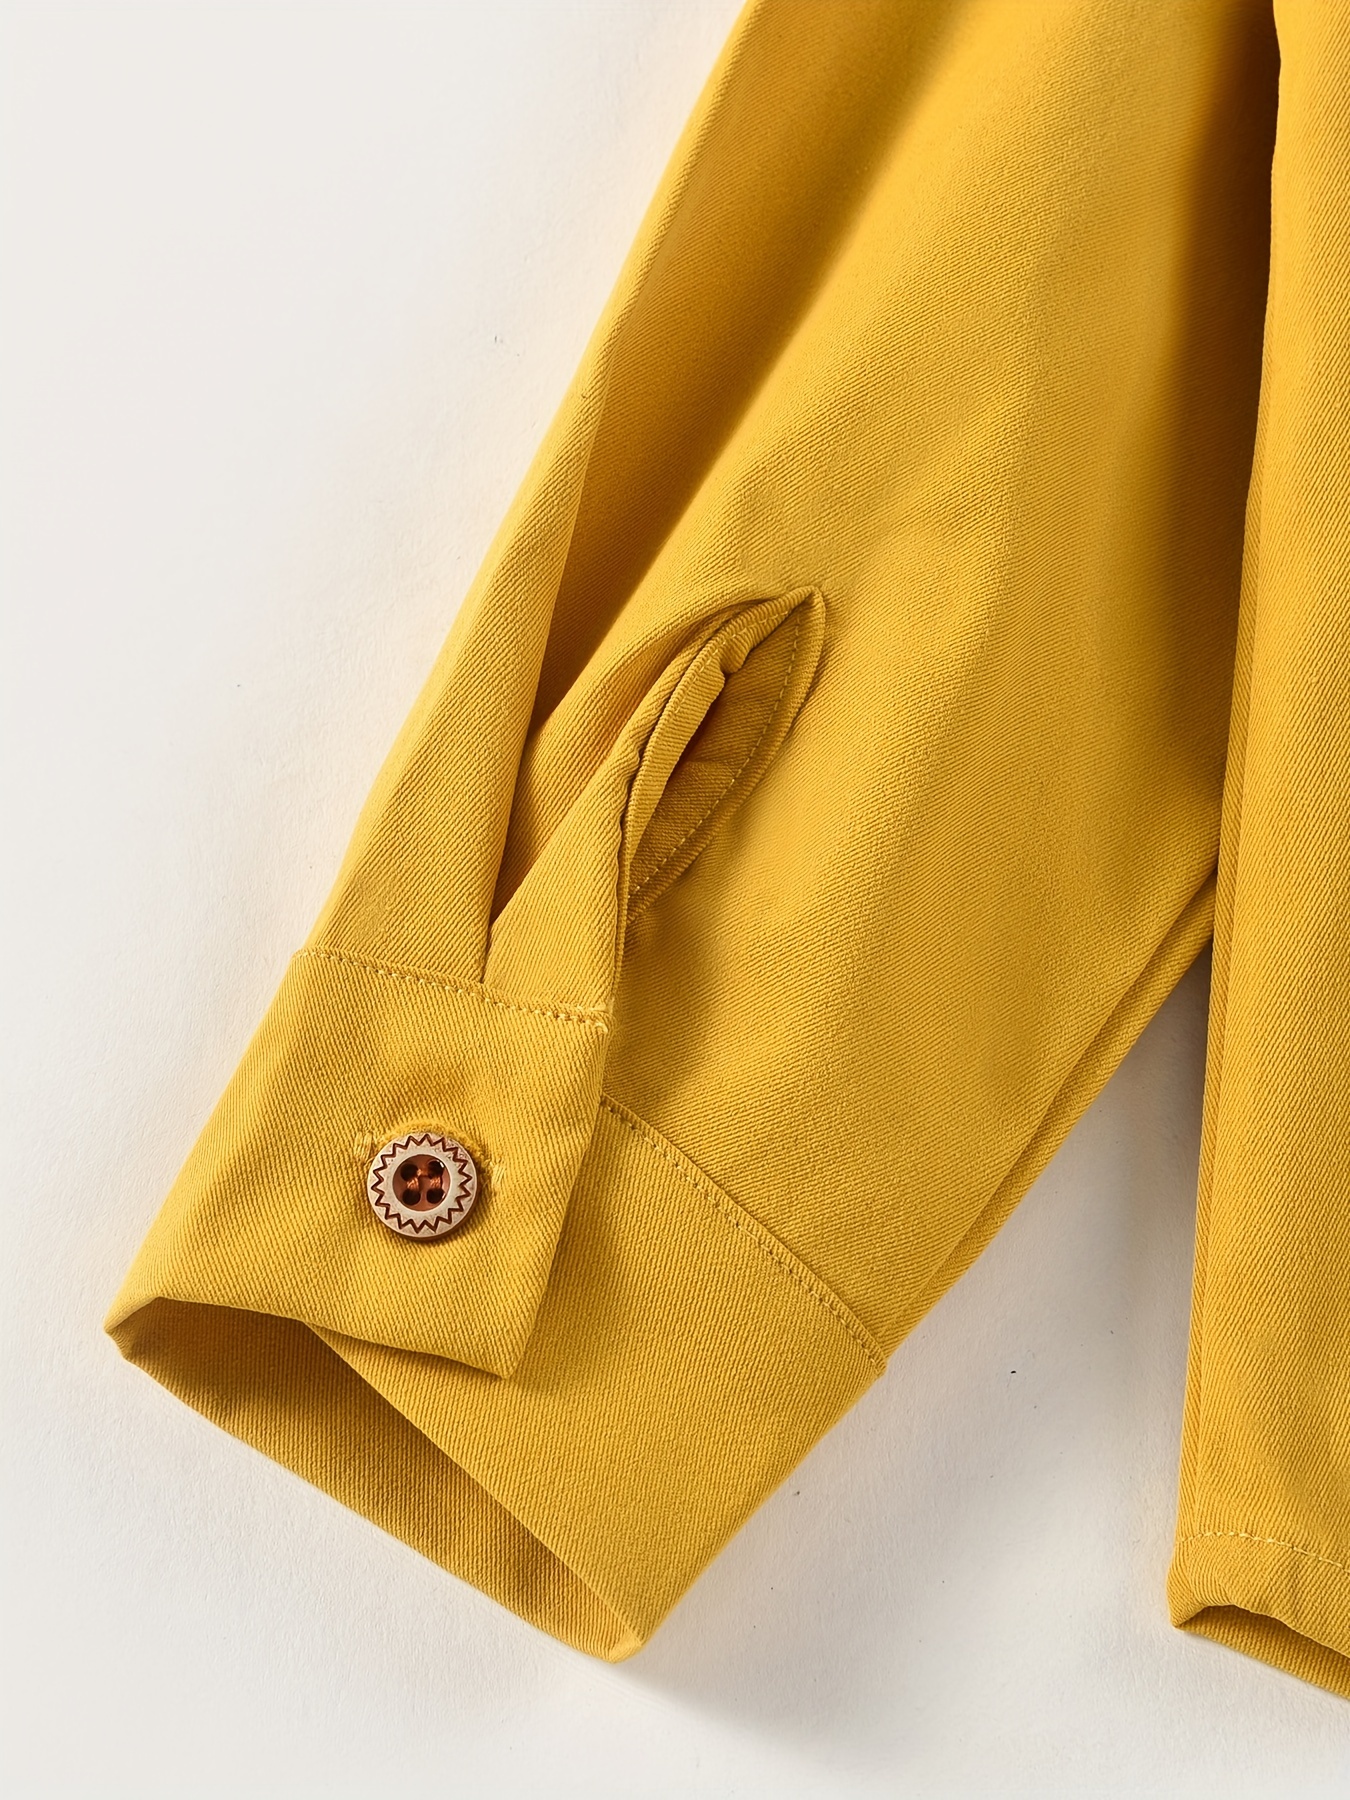 Camiseta manga larga amarilla para chico Color AMARILLO Talla 8